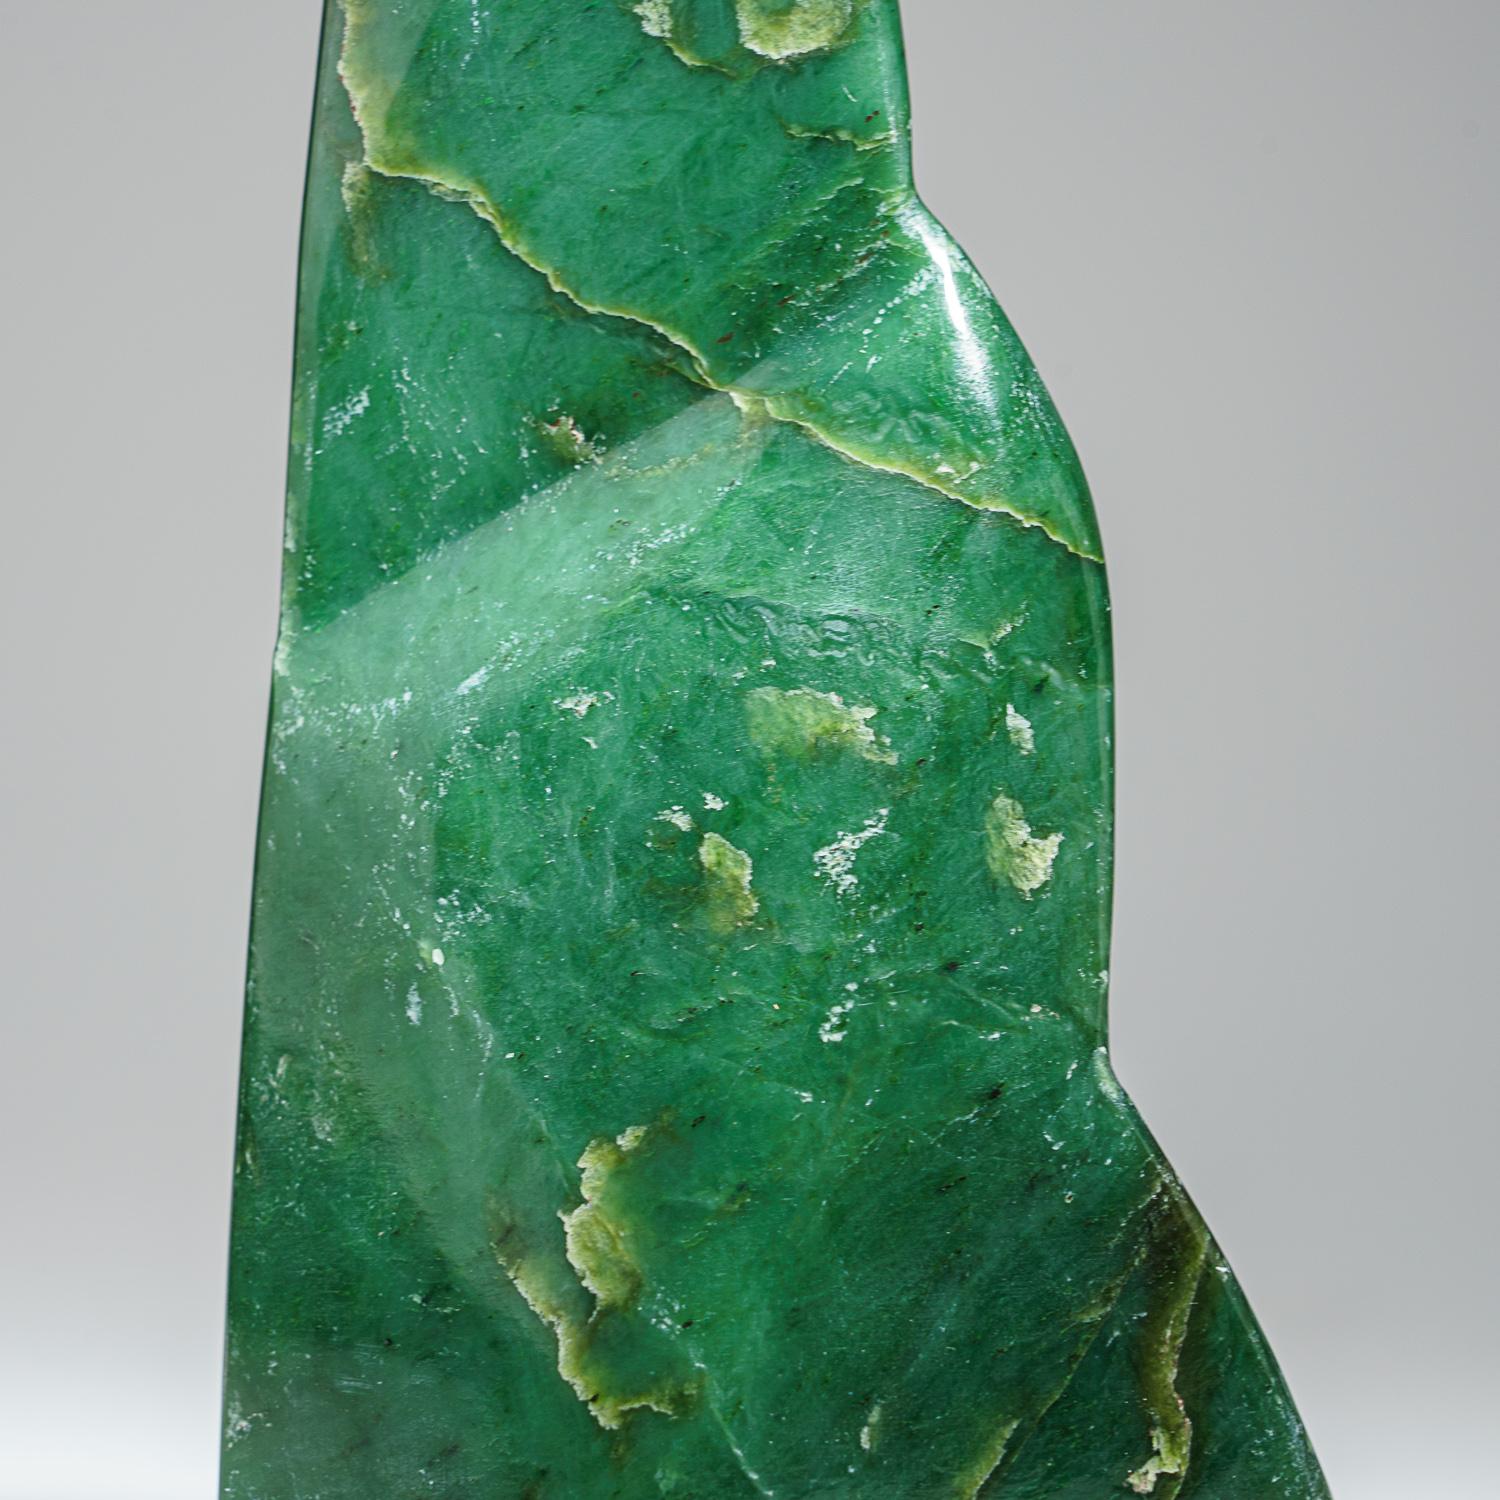 Une forme libre étonnante sculptée dans une pièce solide de jade de qualité gemme. Cette pièce a une couleur captivante avec un lustre brillant et de belles transparences. Elle a été polie à la main pour obtenir une finition miroir. 

Connu sous le